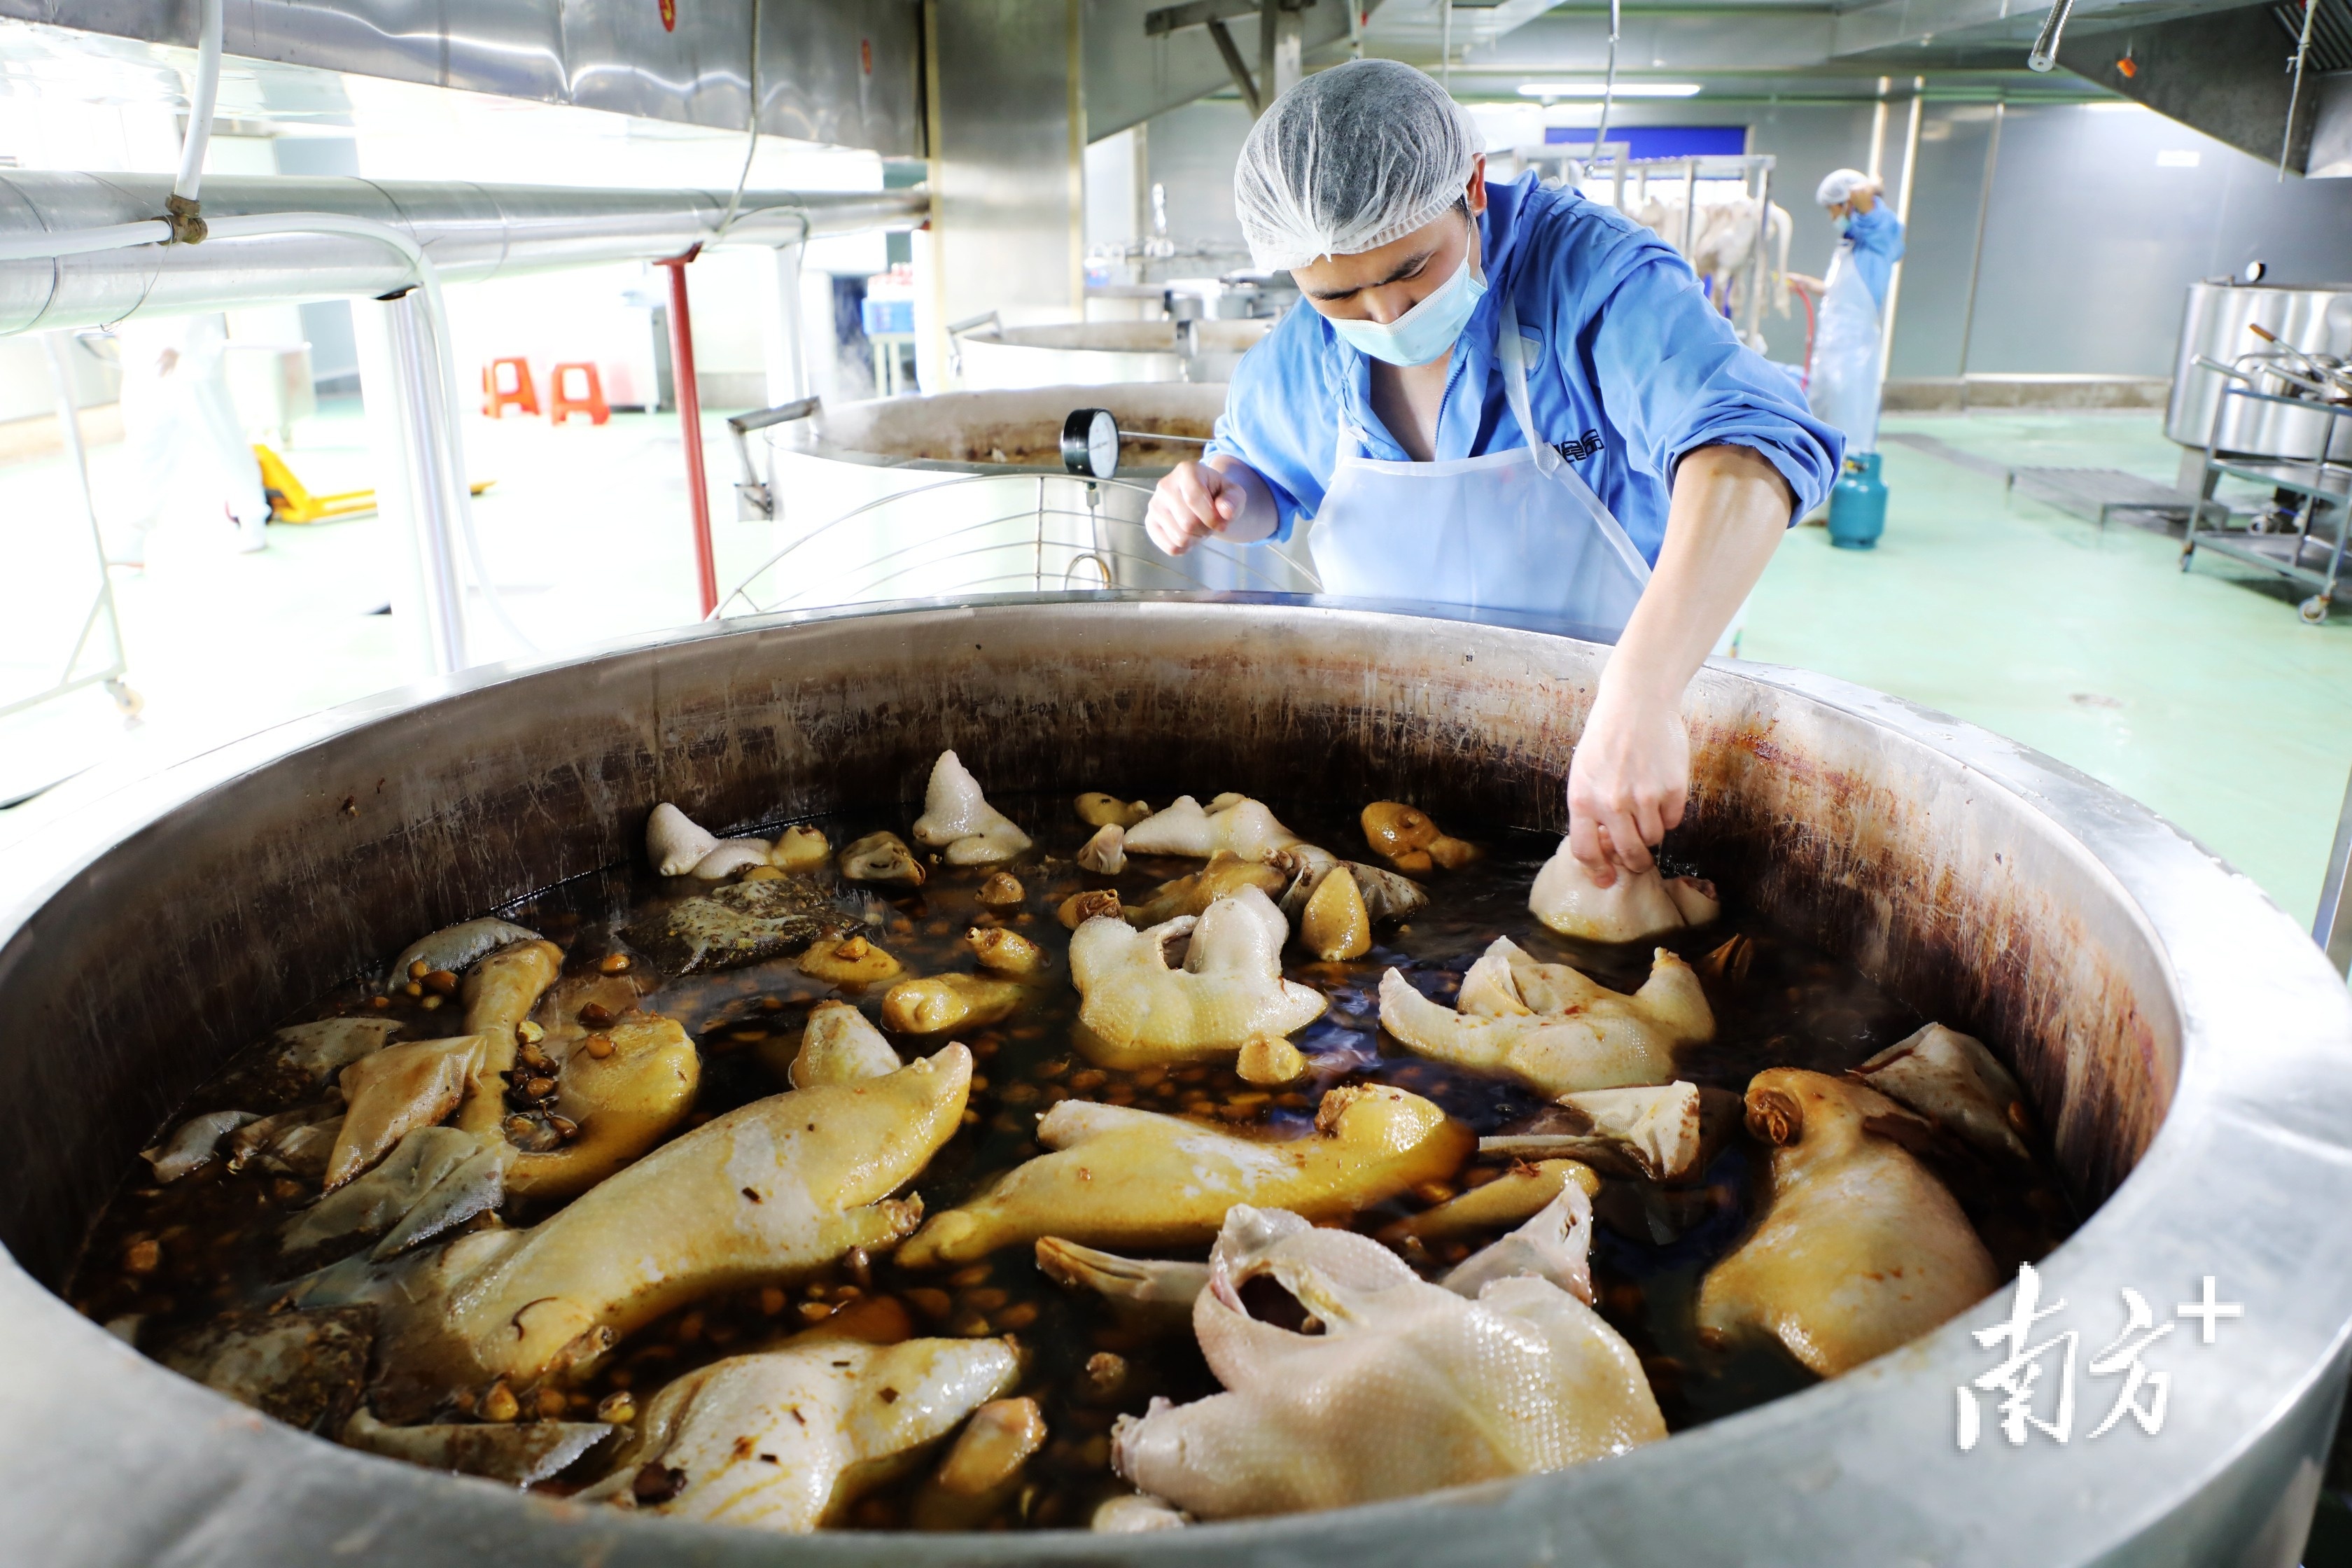 广东熙望食品有限公司的加工车间内，员工正在卤制狮头鹅。 张伟炜 摄